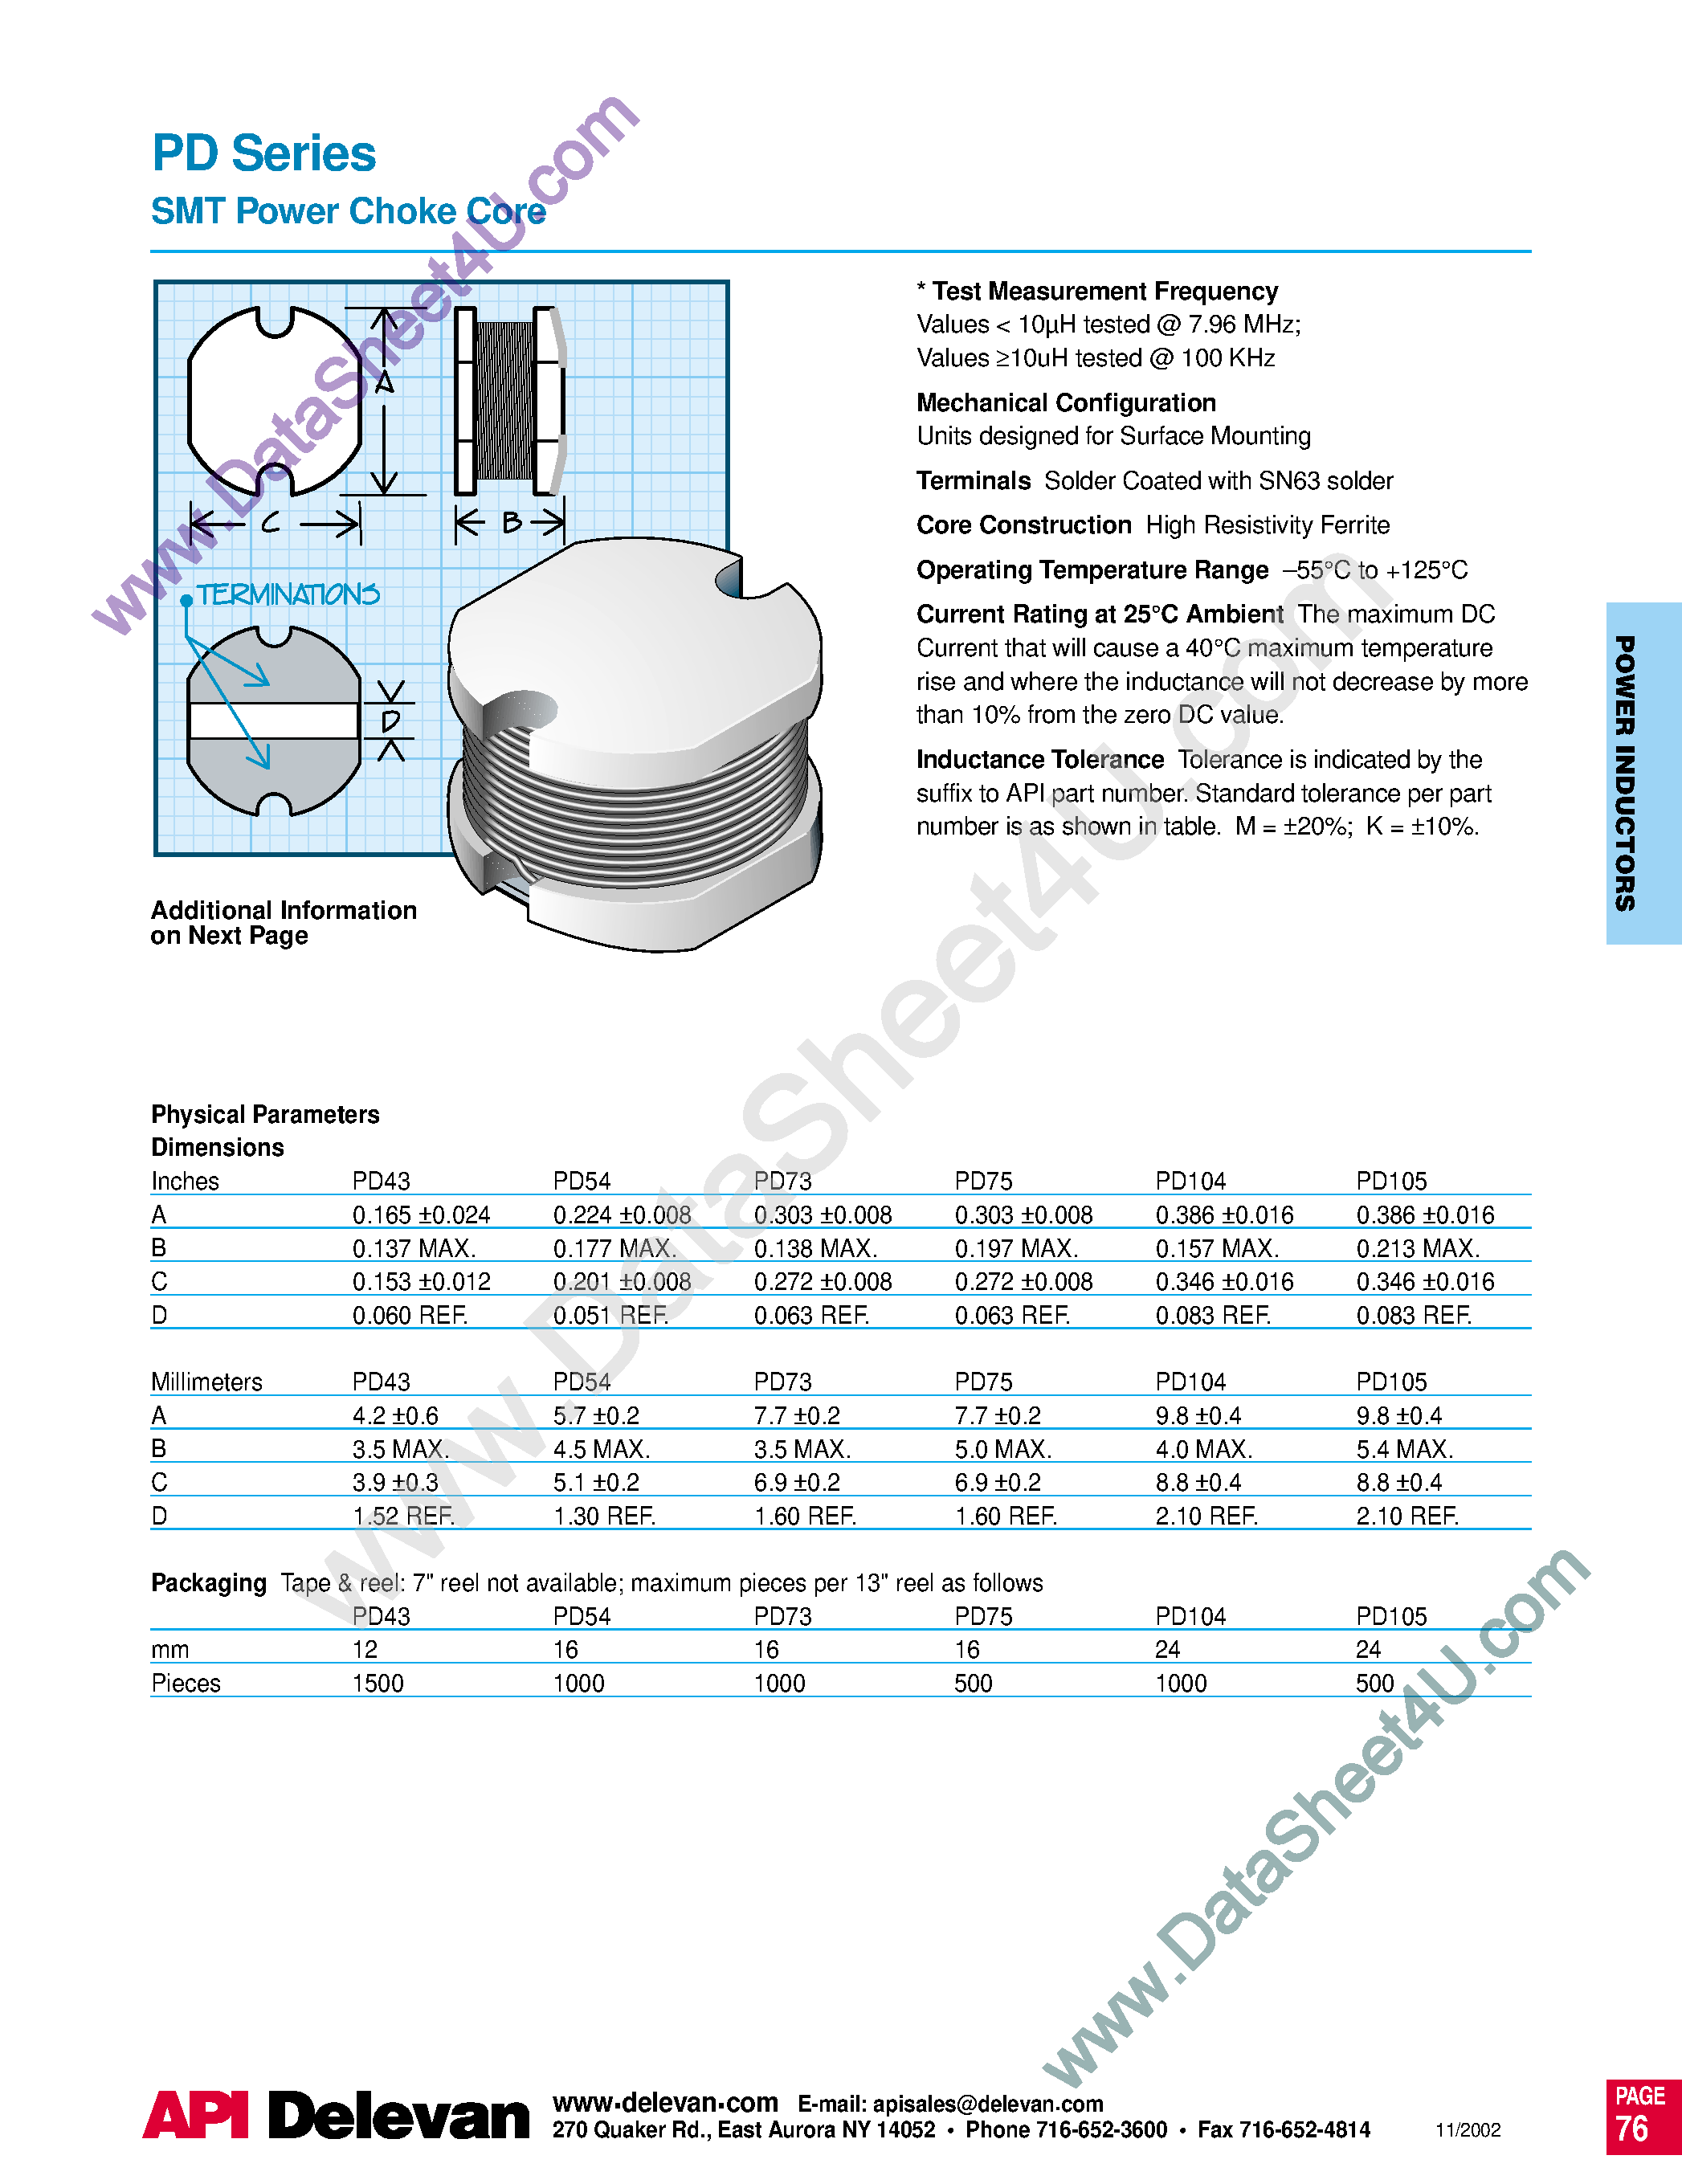 Даташит PD104 - PD Series / SMT Power Chock Core страница 1